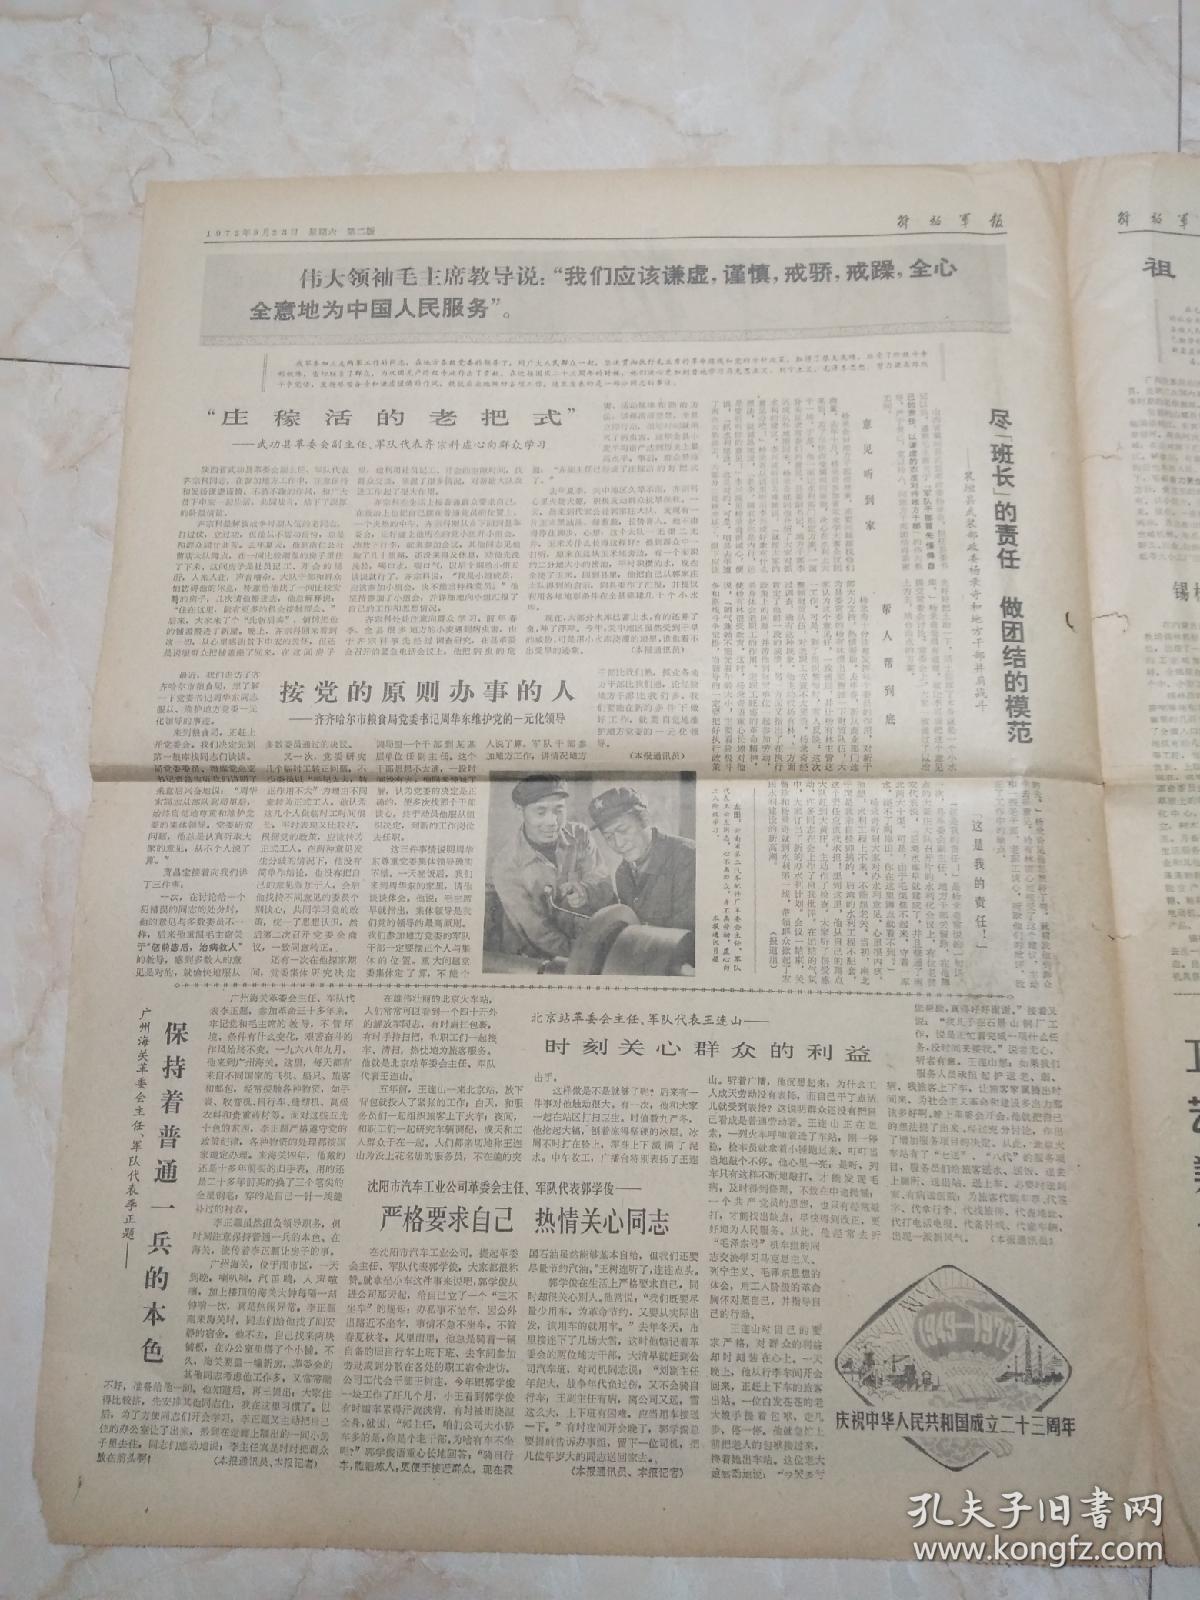 解放军报1972年9月23日。玉树军分区大力培养少数民族干部。喜看少数民族战士在成长。北京部队党委发布命令给傅春华同志追记一等功。祖国大地会新图。